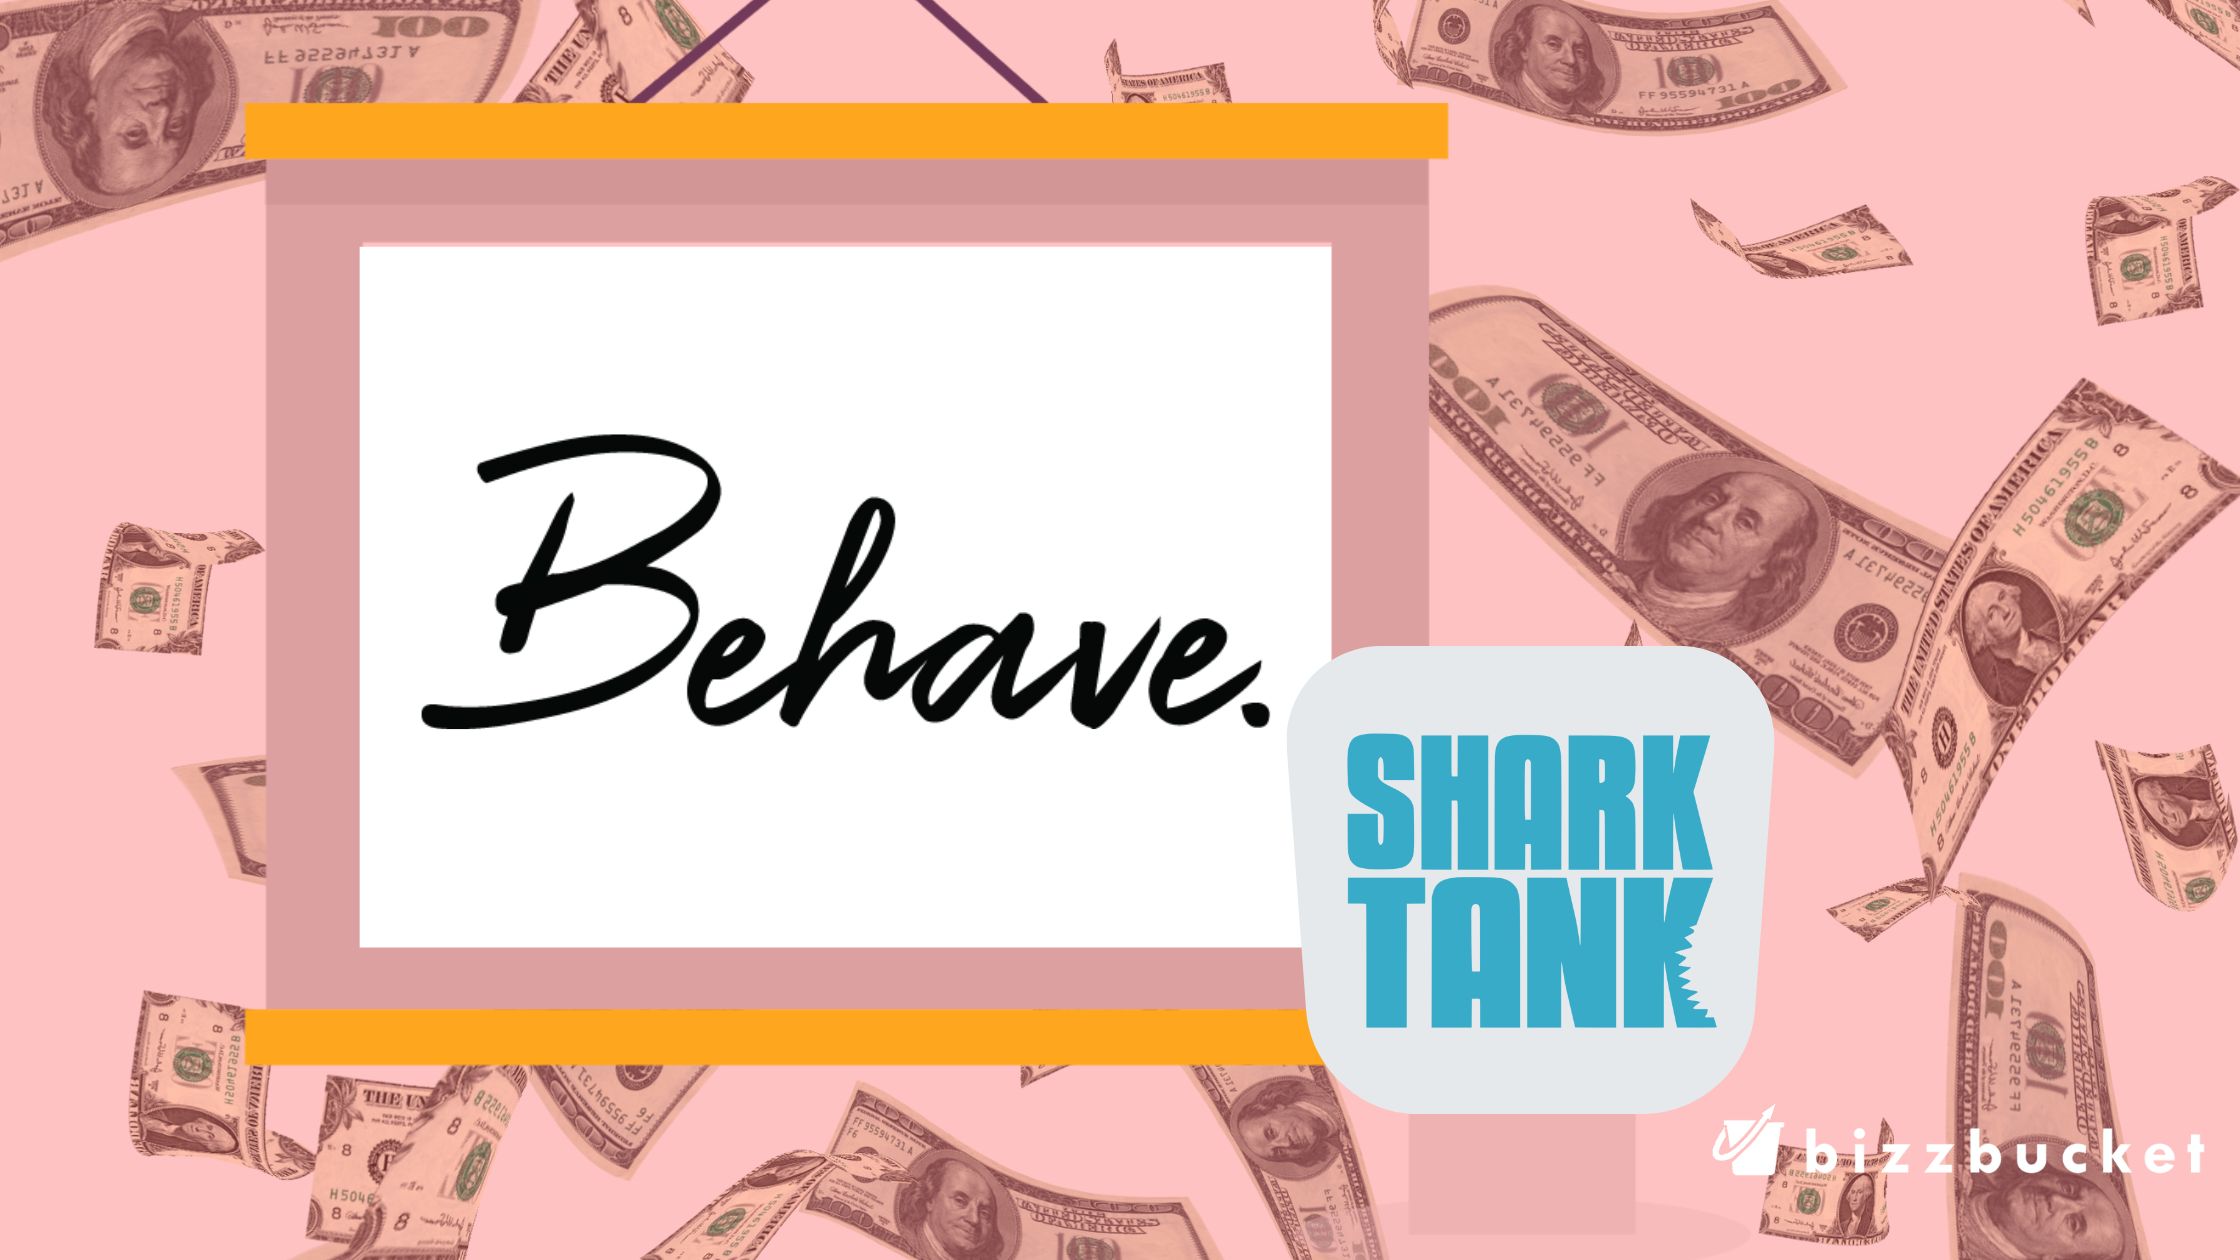 Behave Bras shark tank update